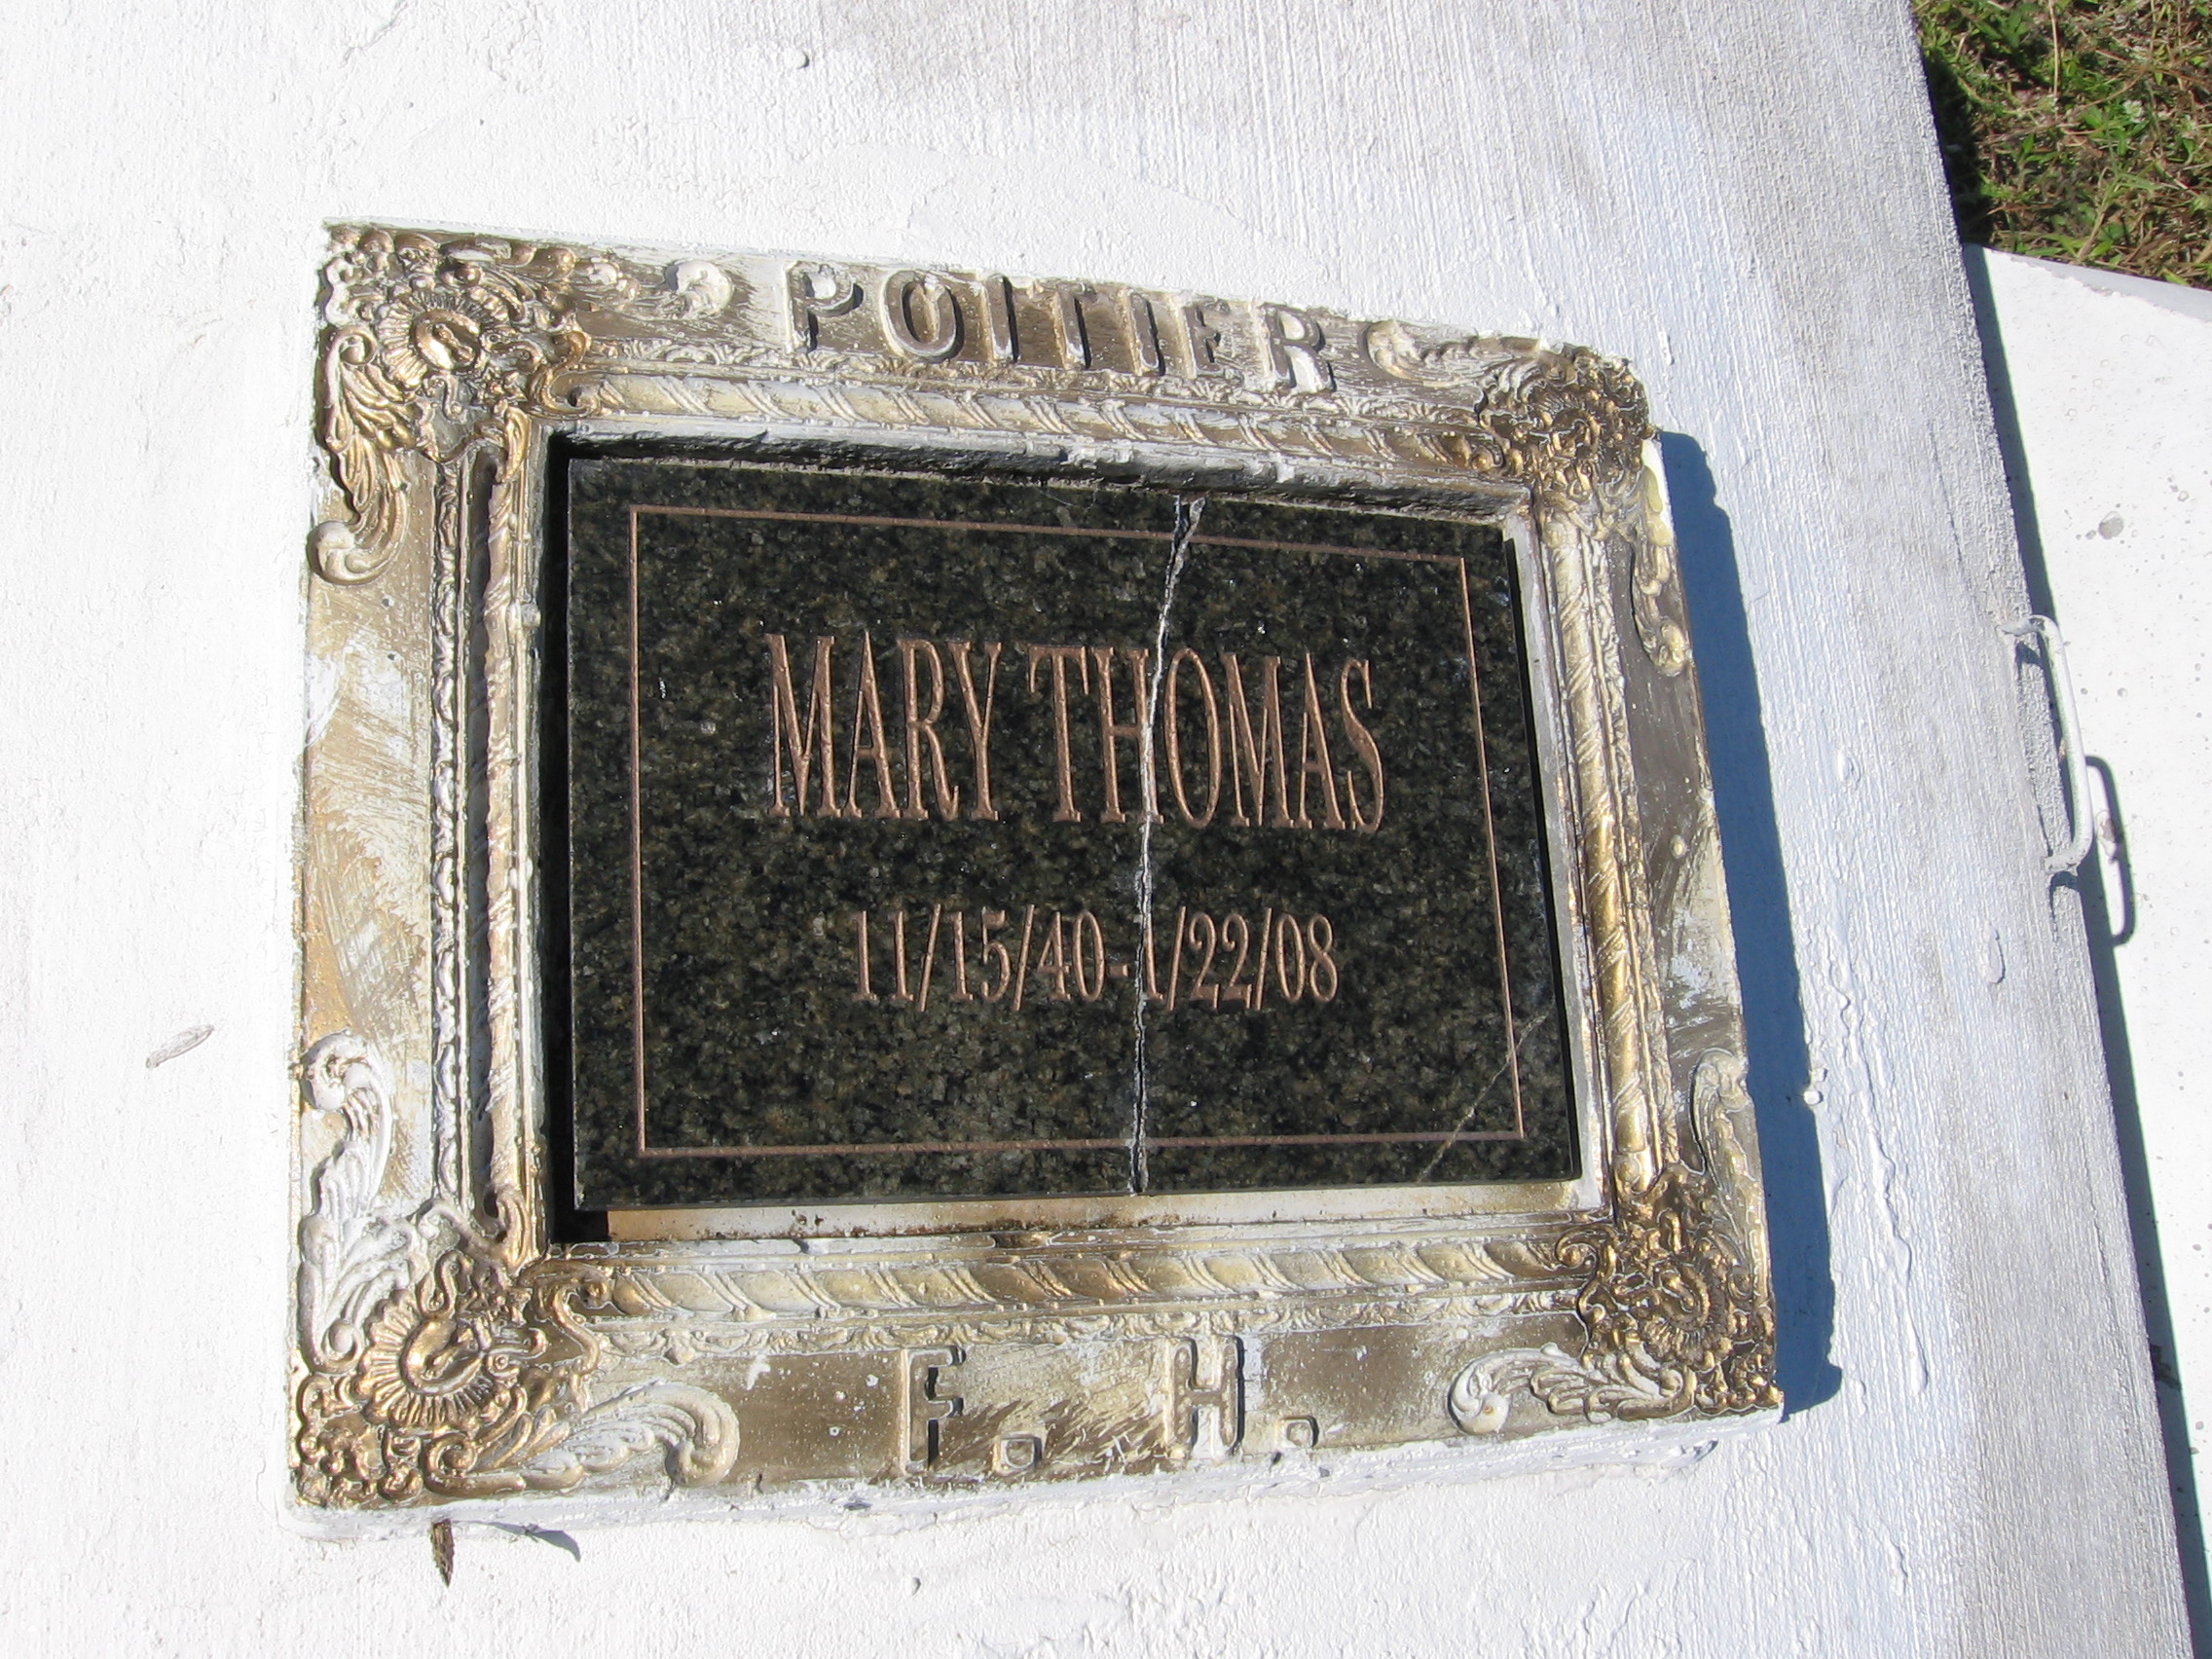 Mary Thomas